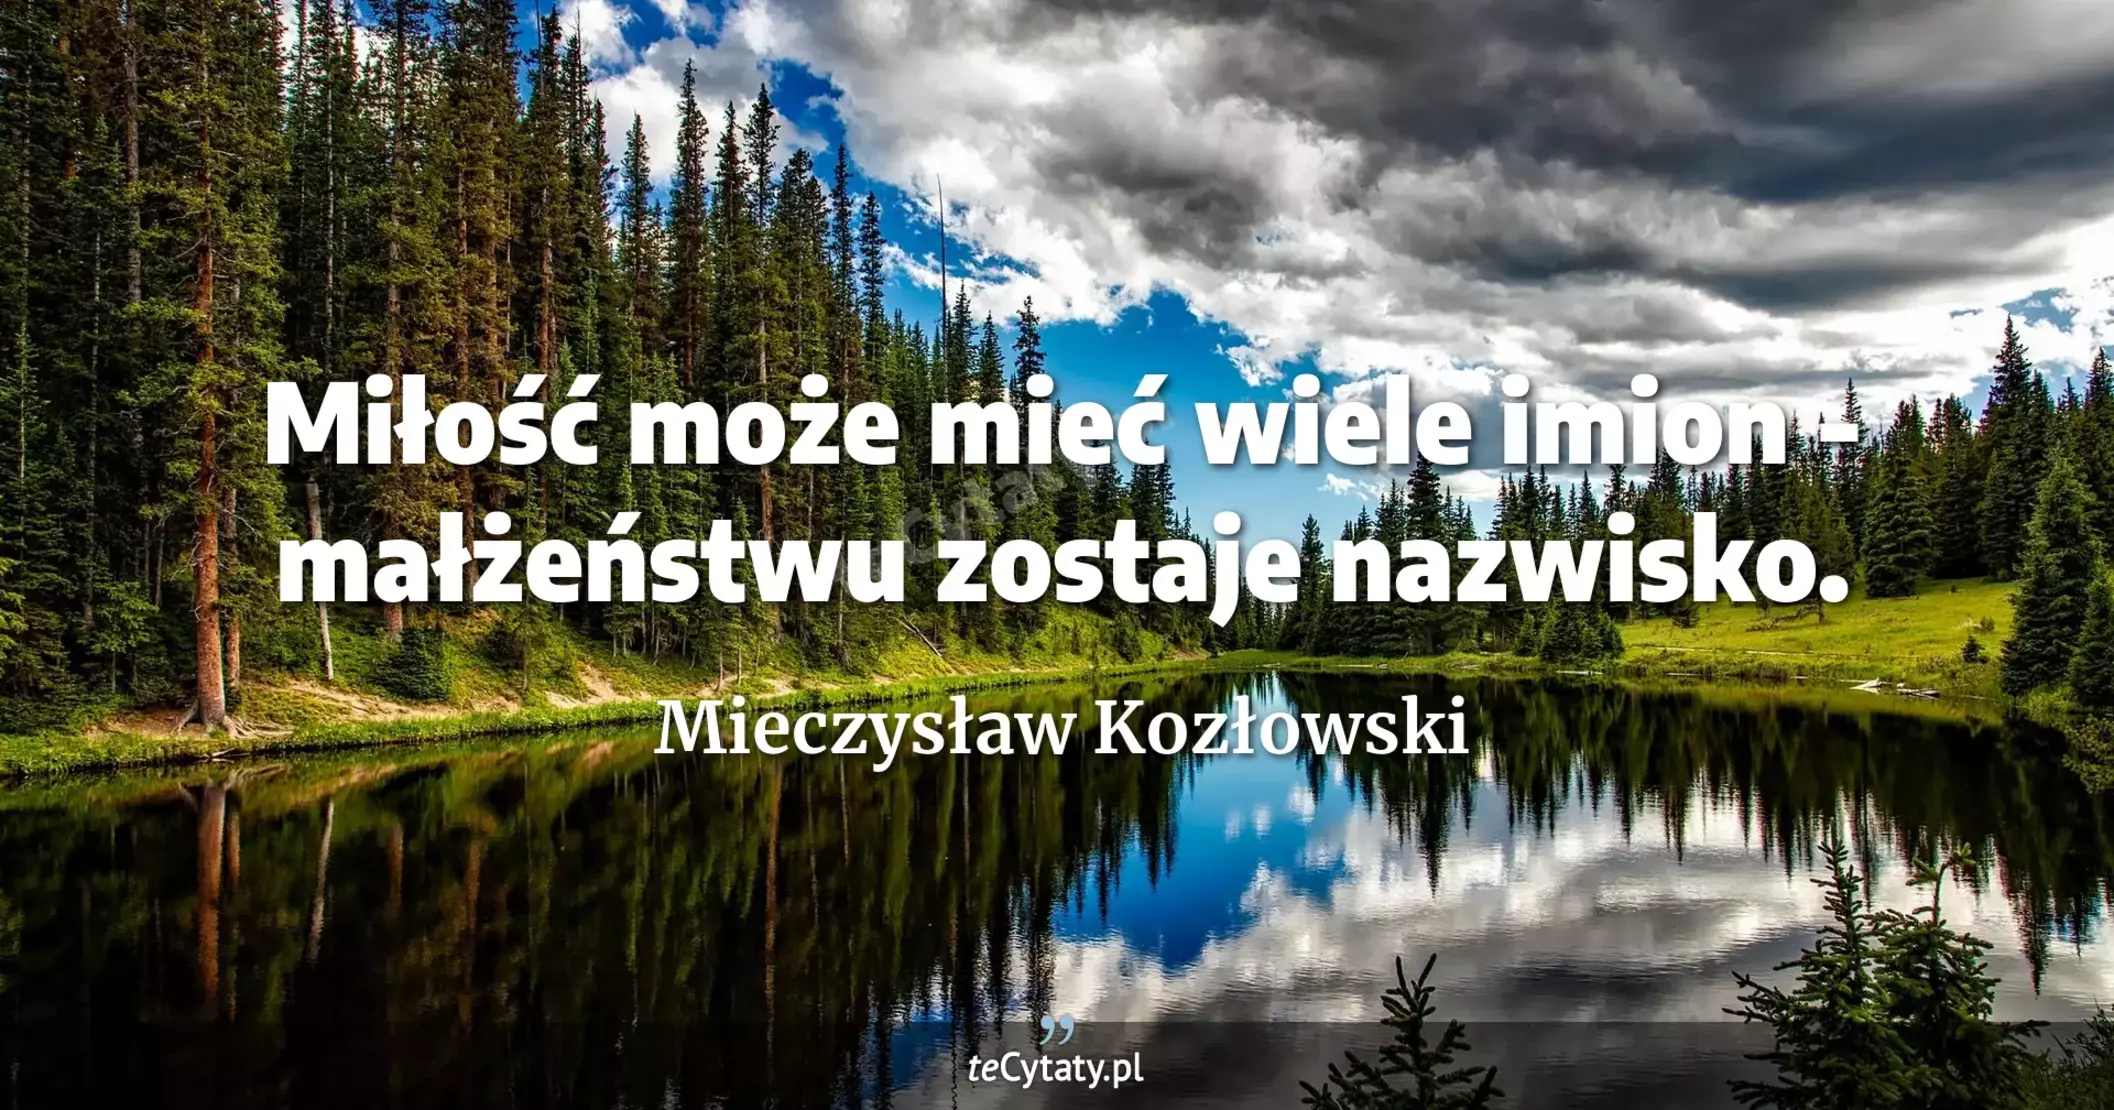 Miłość może mieć wiele imion - małżeństwu zostaje nazwisko. - Mieczysław Kozłowski